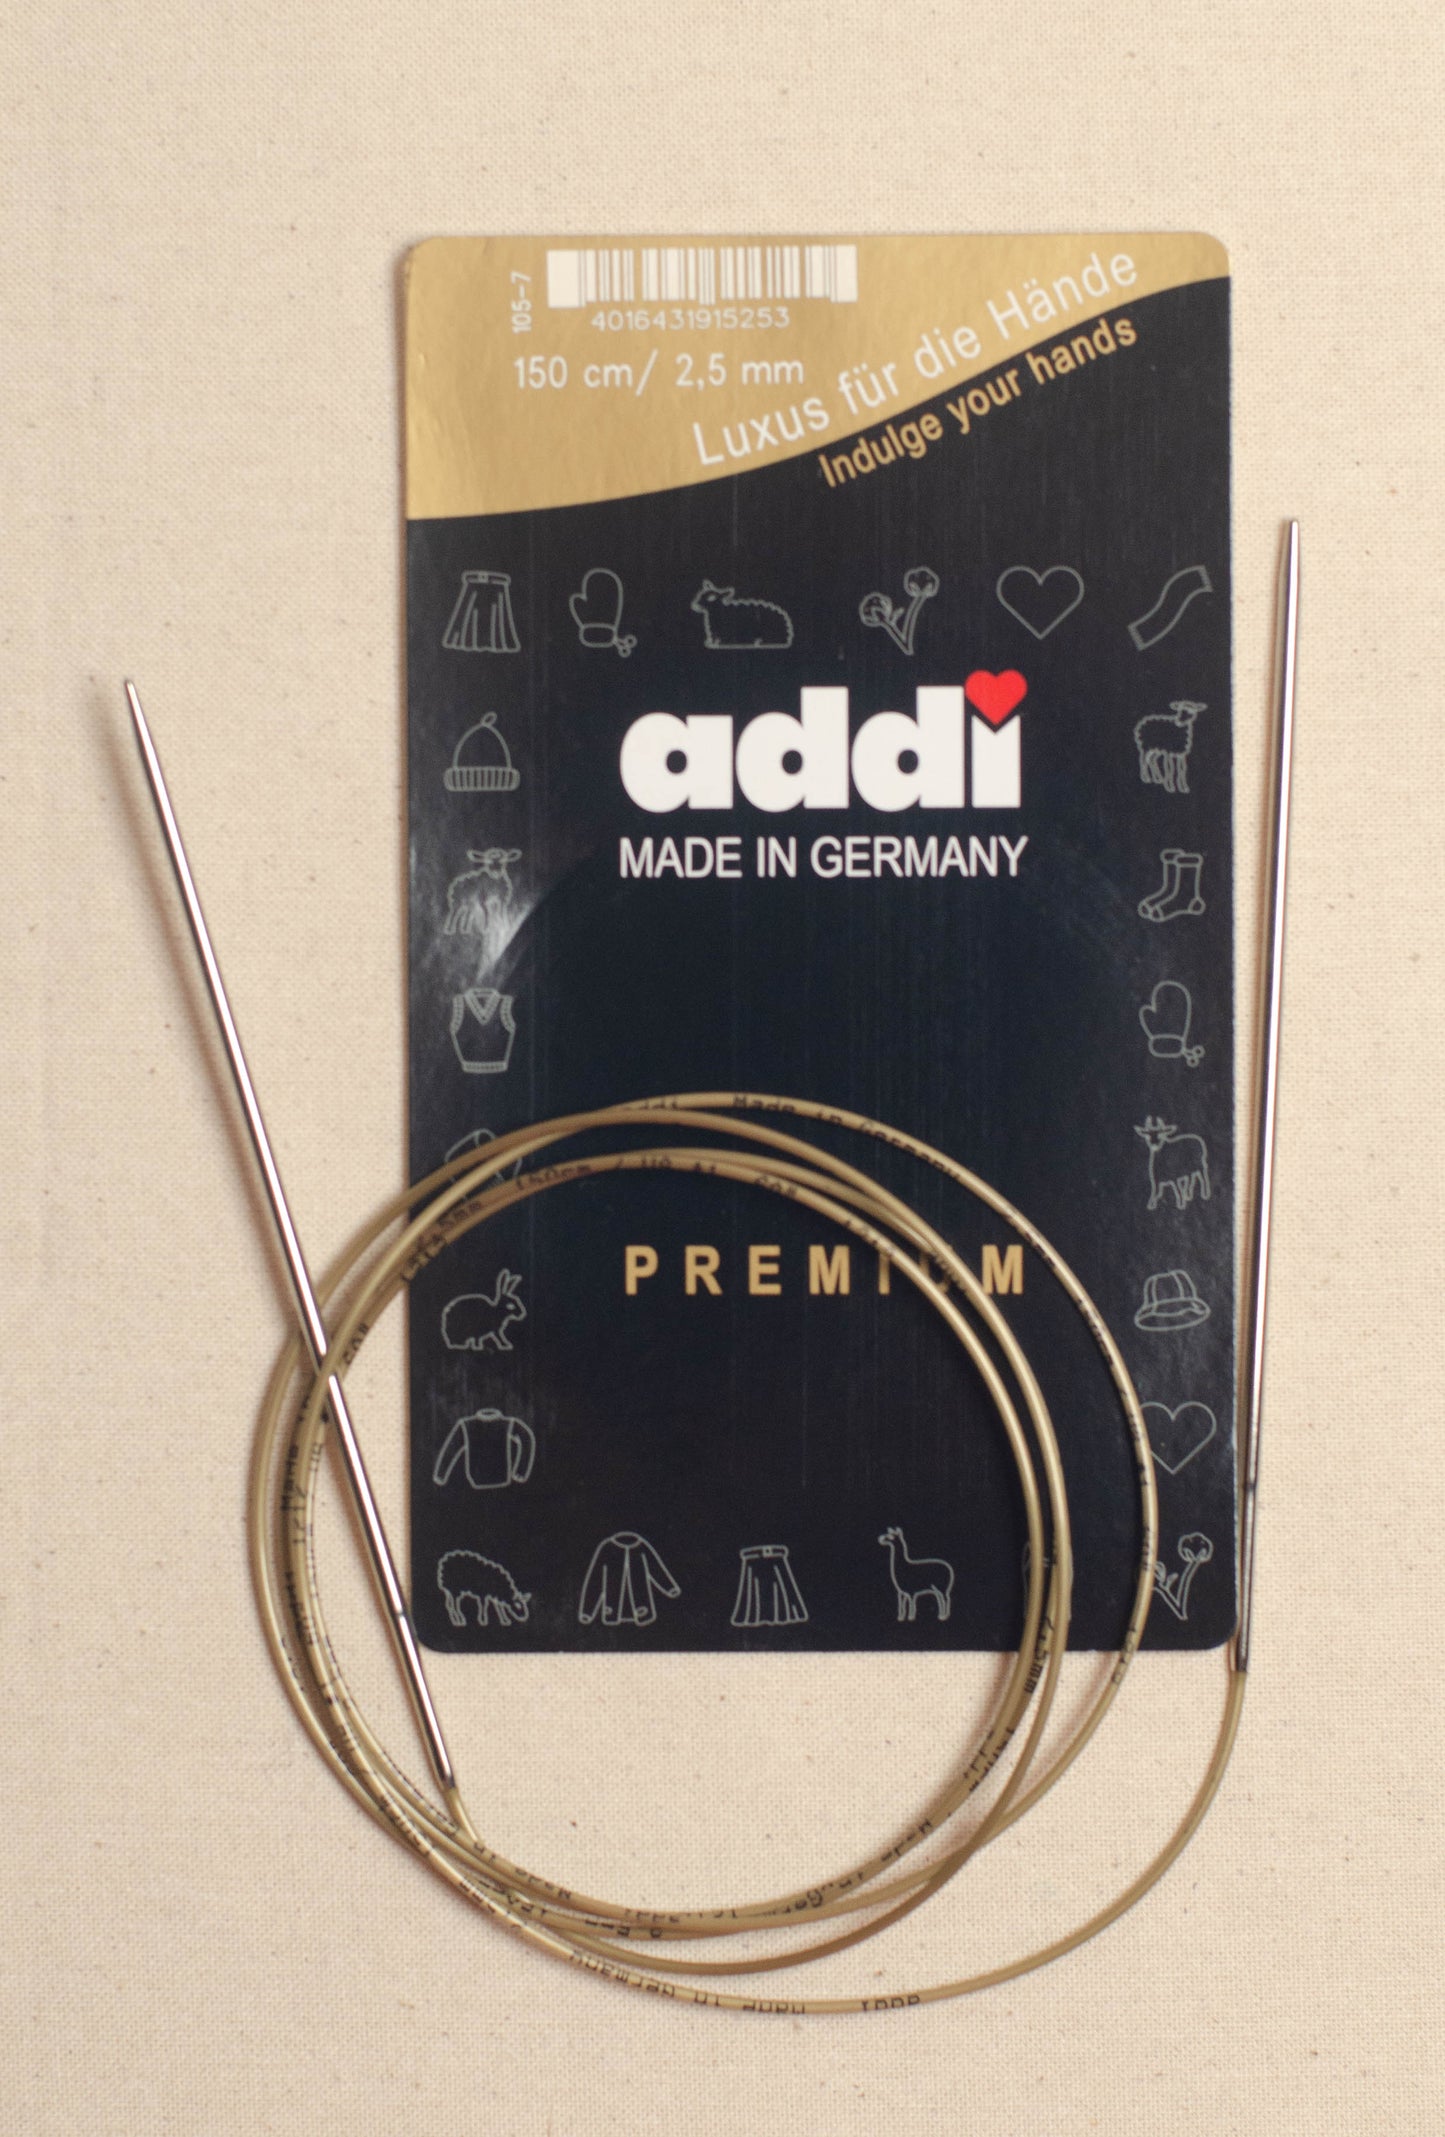 150cm/ 2.5mm Addi Circular Knitting Needles